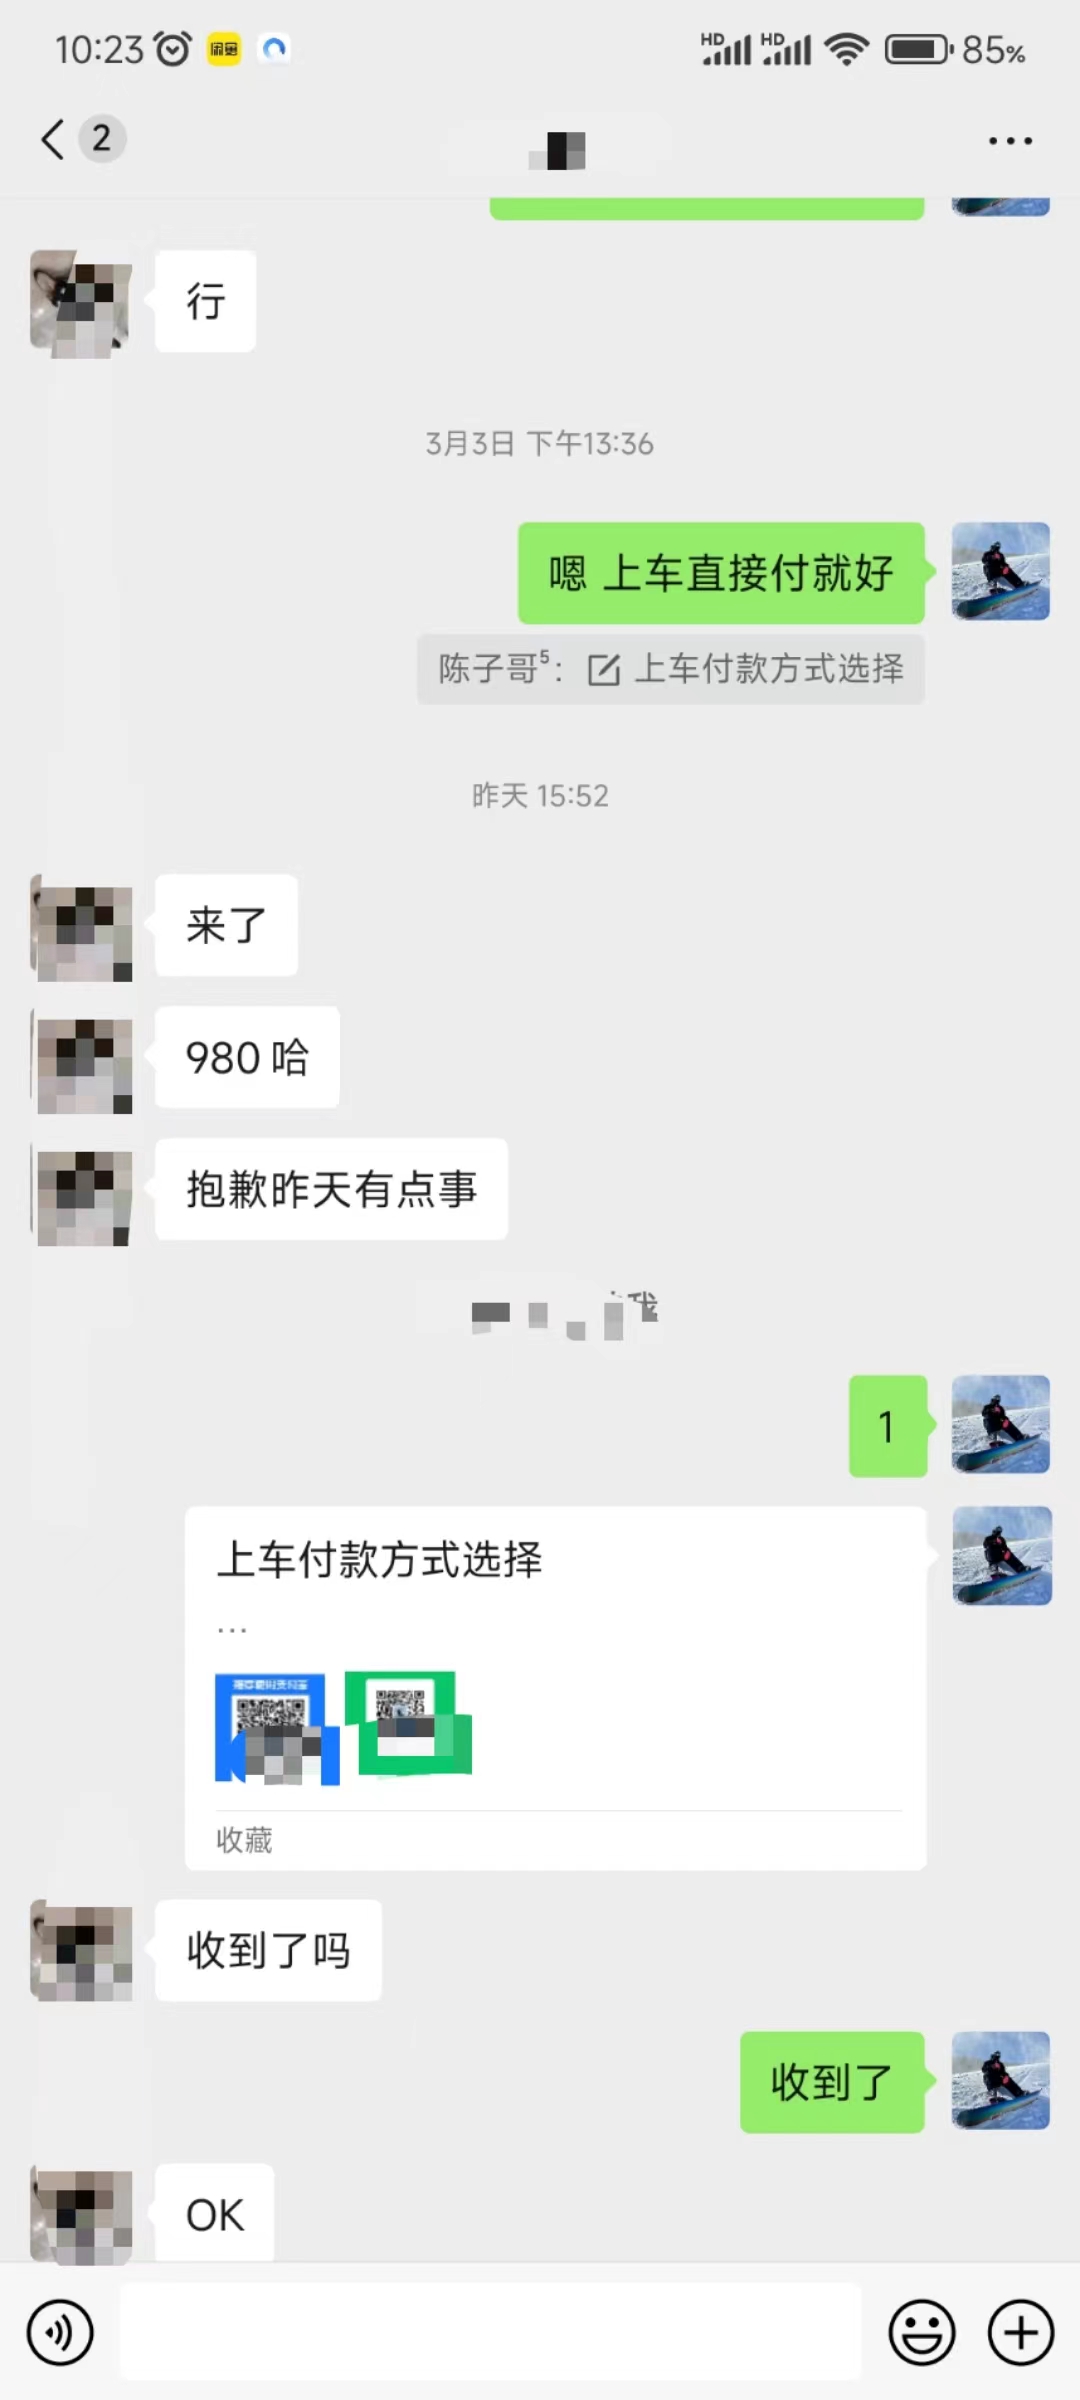 (9261期)QQ无人直播 新赛道新玩法 一天轻松500+ 腾讯官方流量扶持